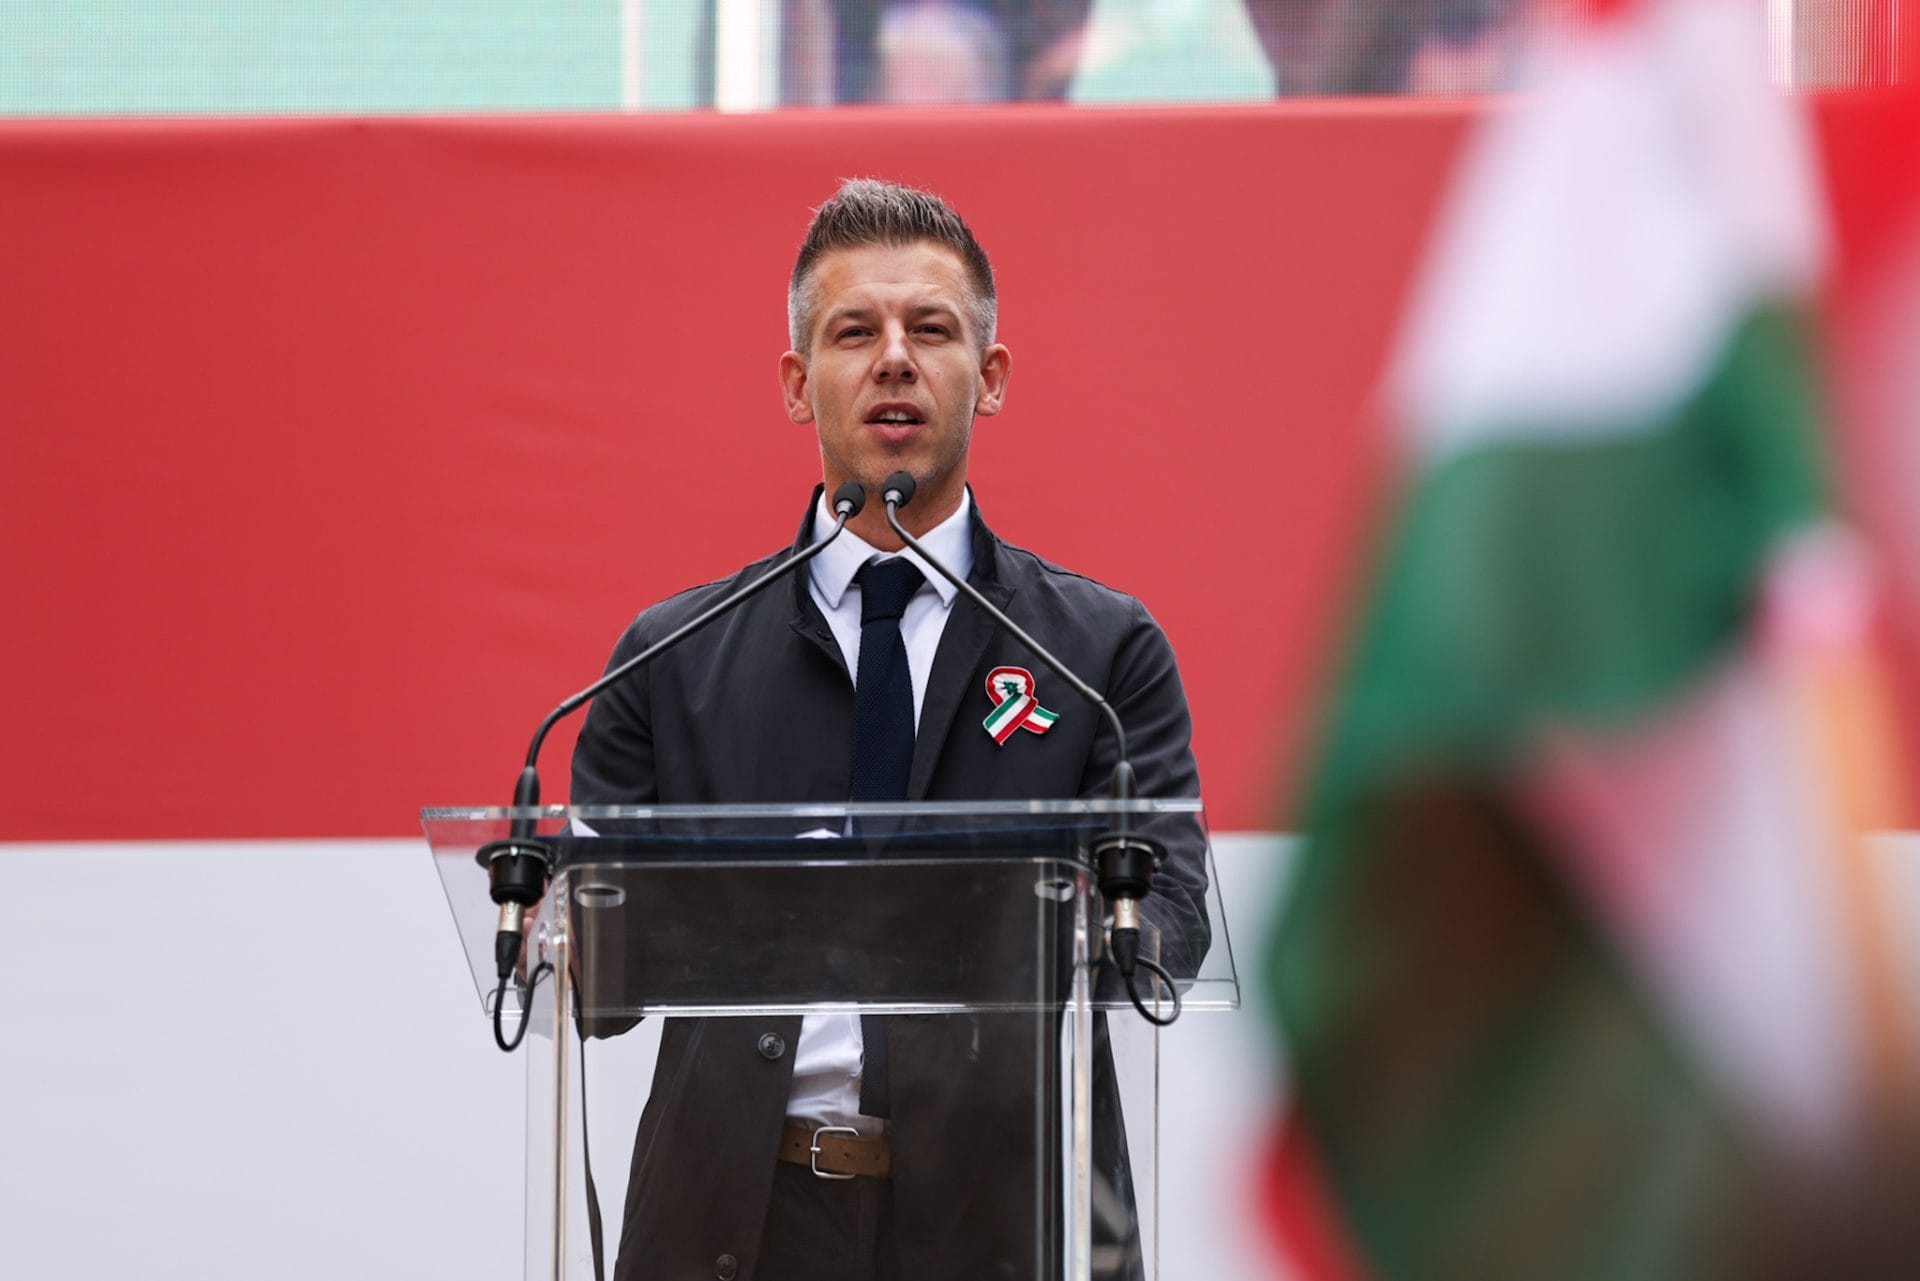 Magyar Péter büszkén vállalta a hatalmas tömeg előtt a 12 pontos programot